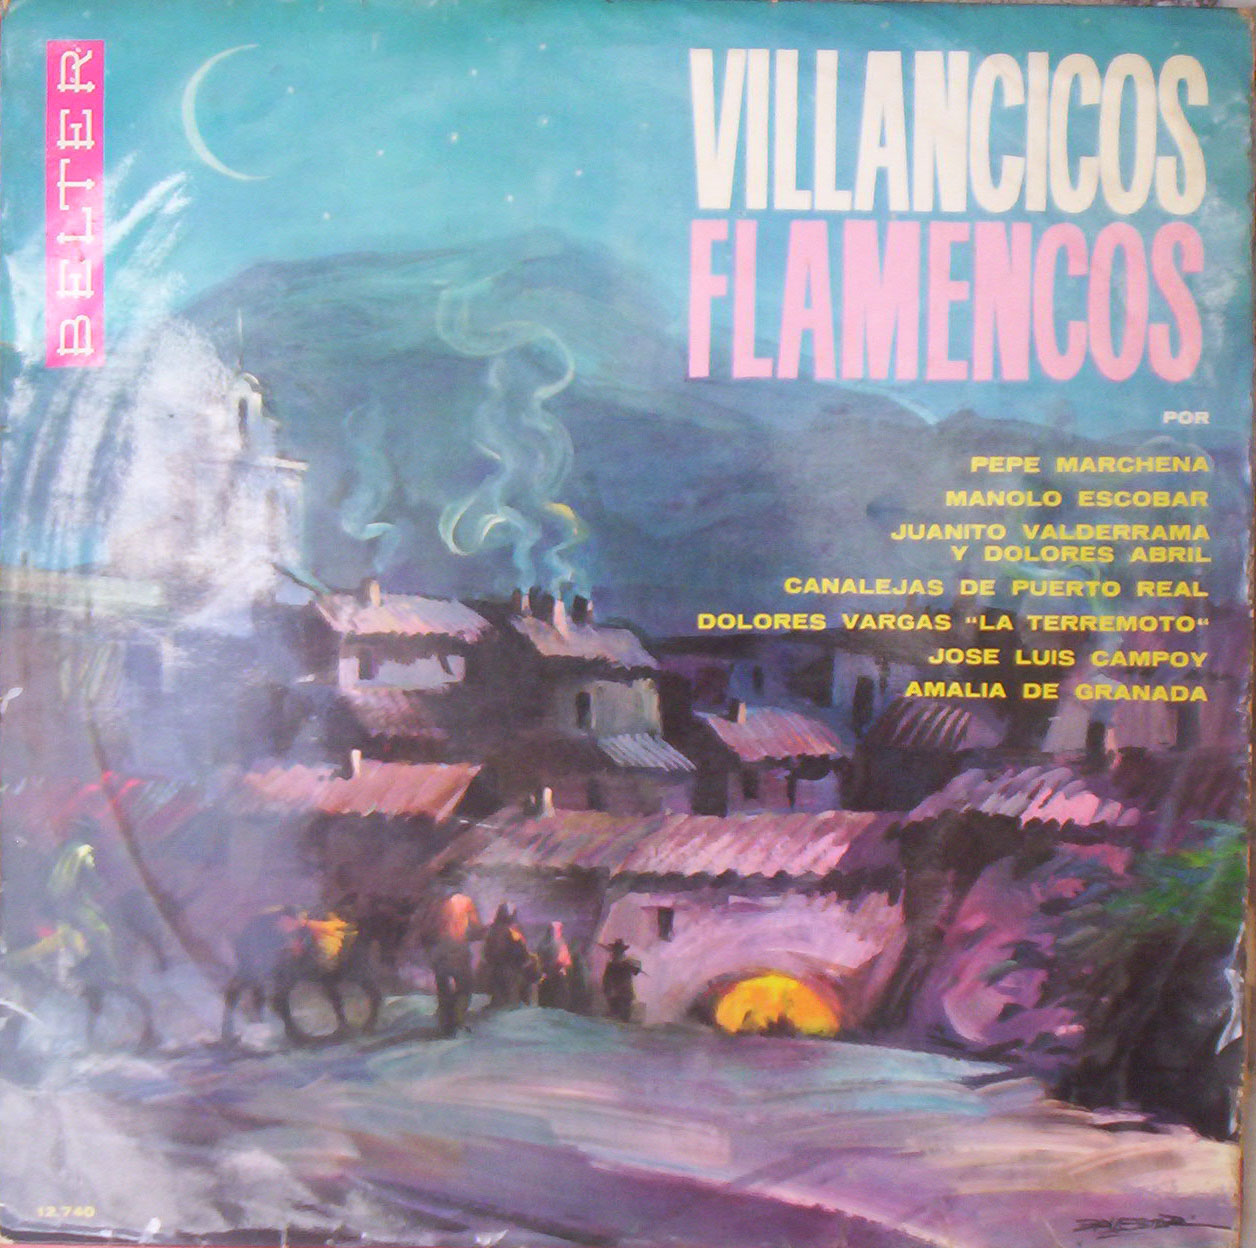 Flamenco Aficcionados Exitos De Villancicos Flamencos